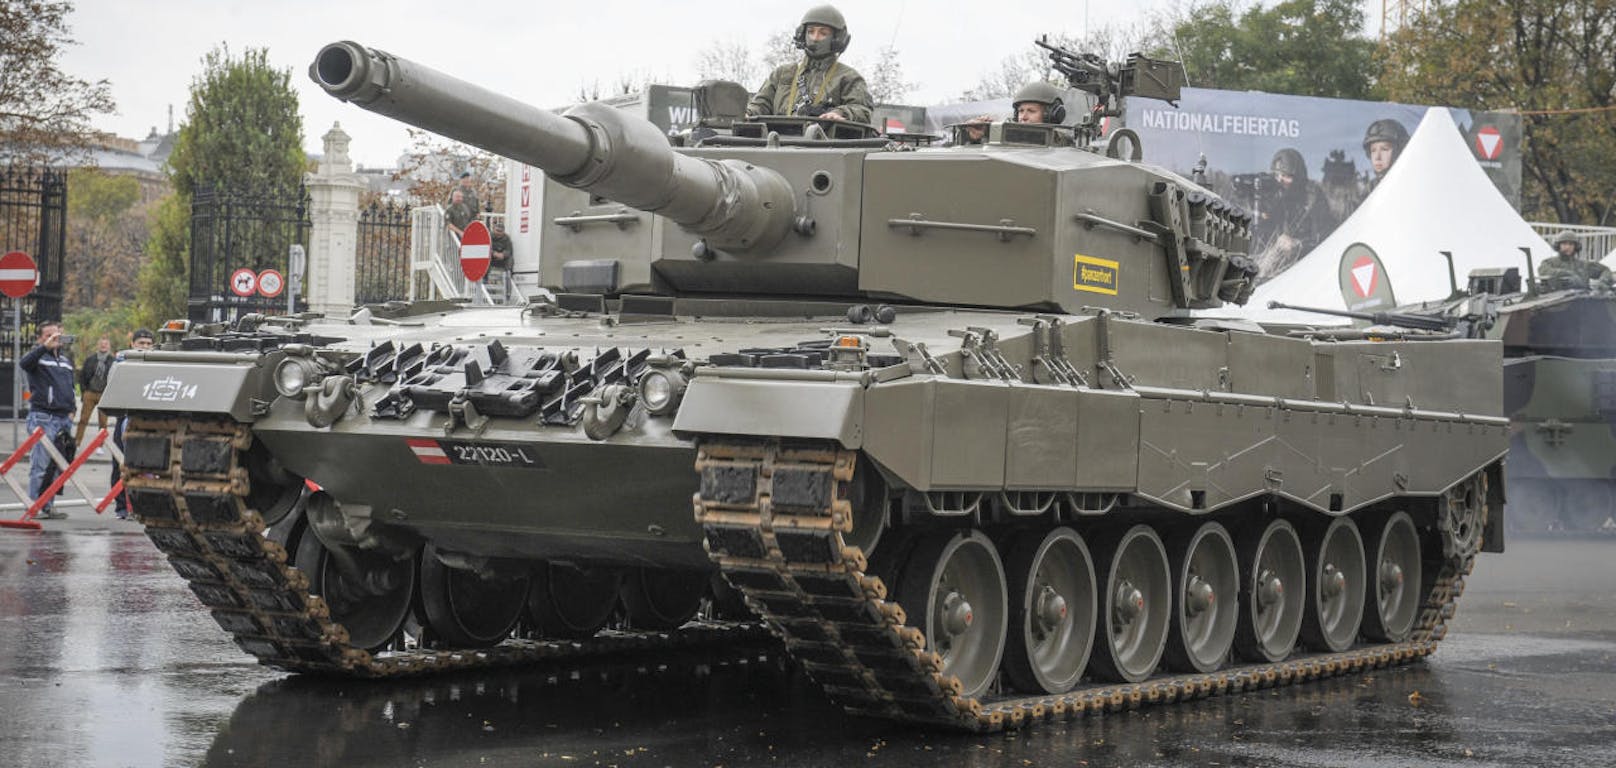 Während der Vorführungen kommt ebenfalls der Kampfpanzer Leopard zum Einsatz